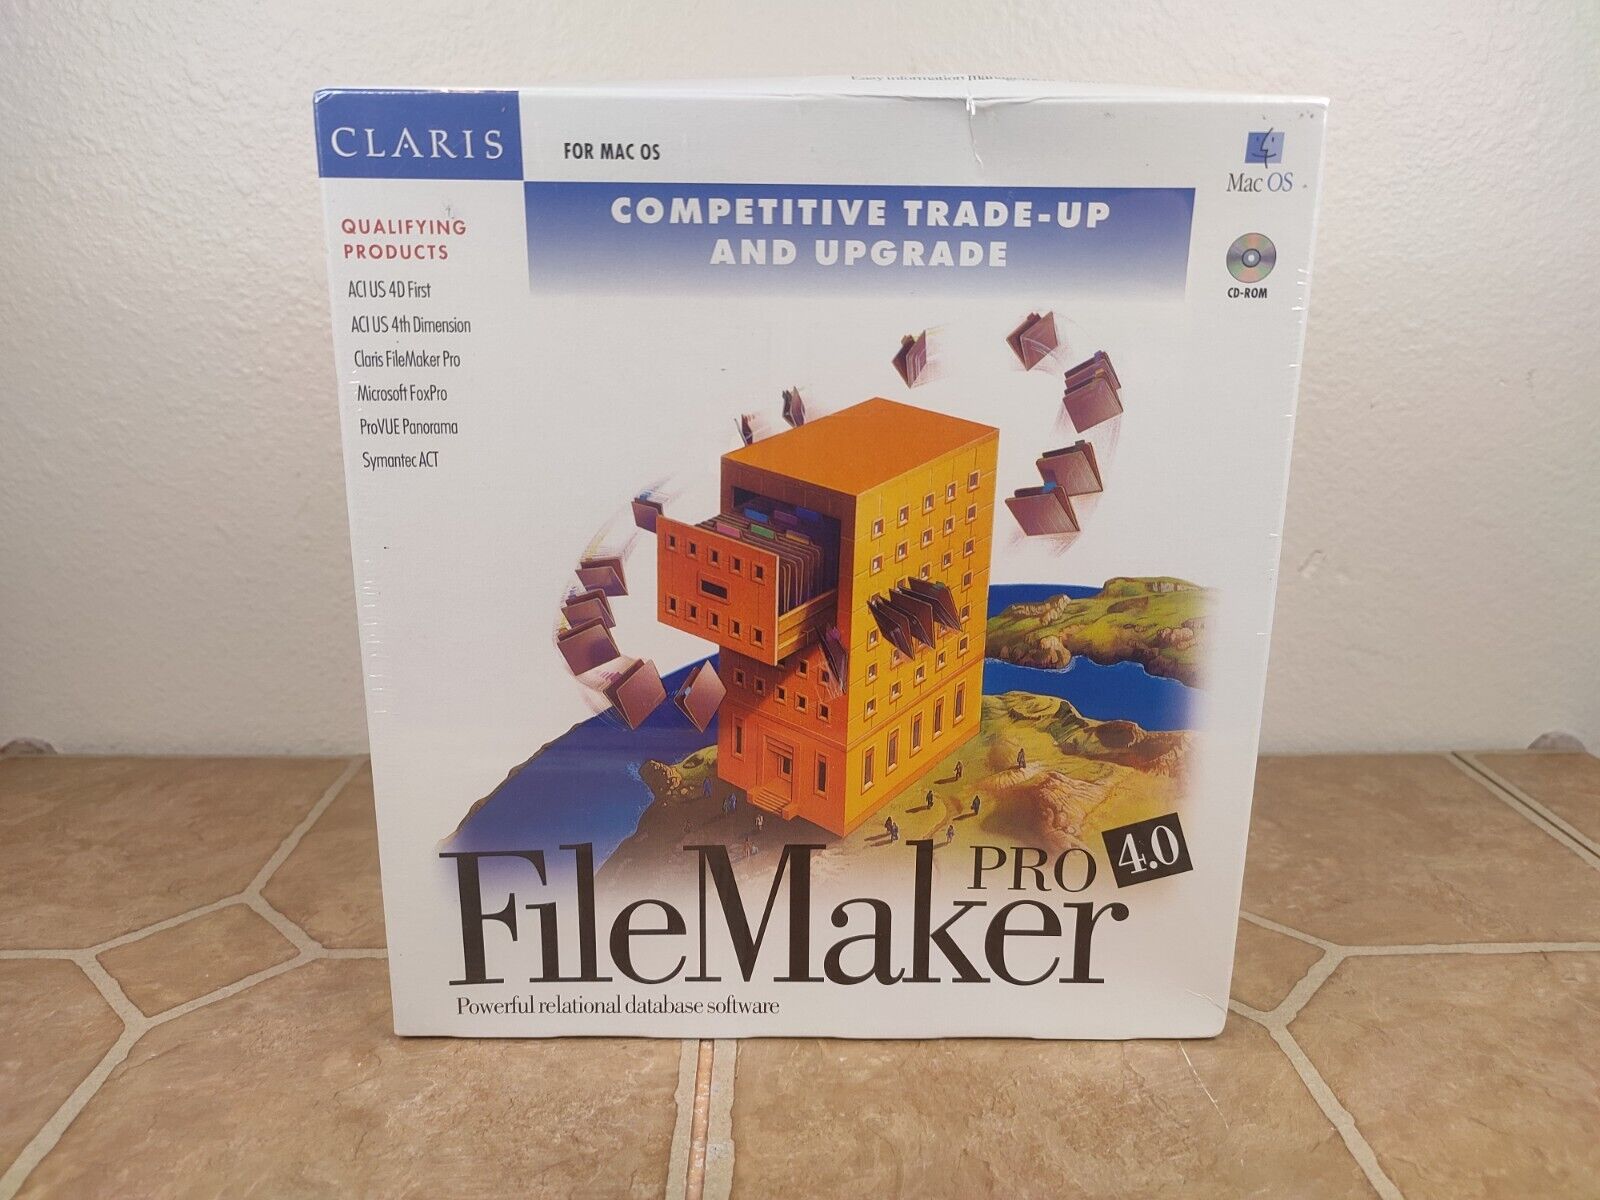 VTG 1997 Claris FileMaker 4.0 Pro MAC Software NIB for OLD CLASSIC MACS OS 8